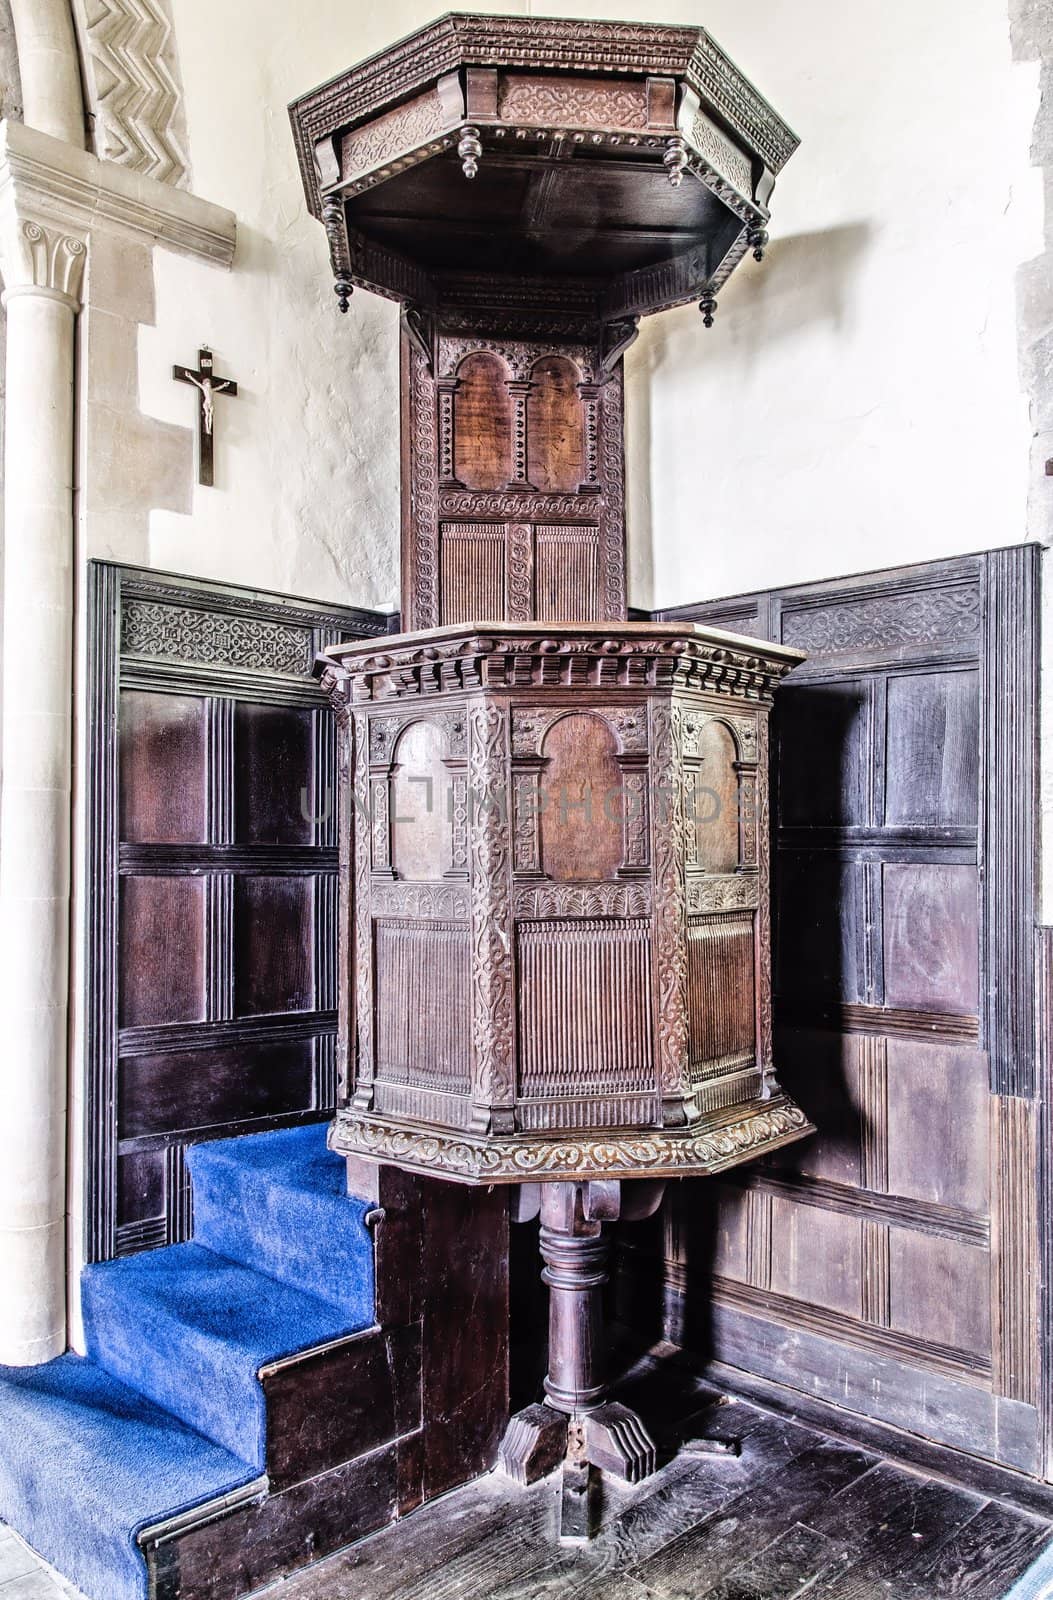 Old ornate carved wooden pulpit